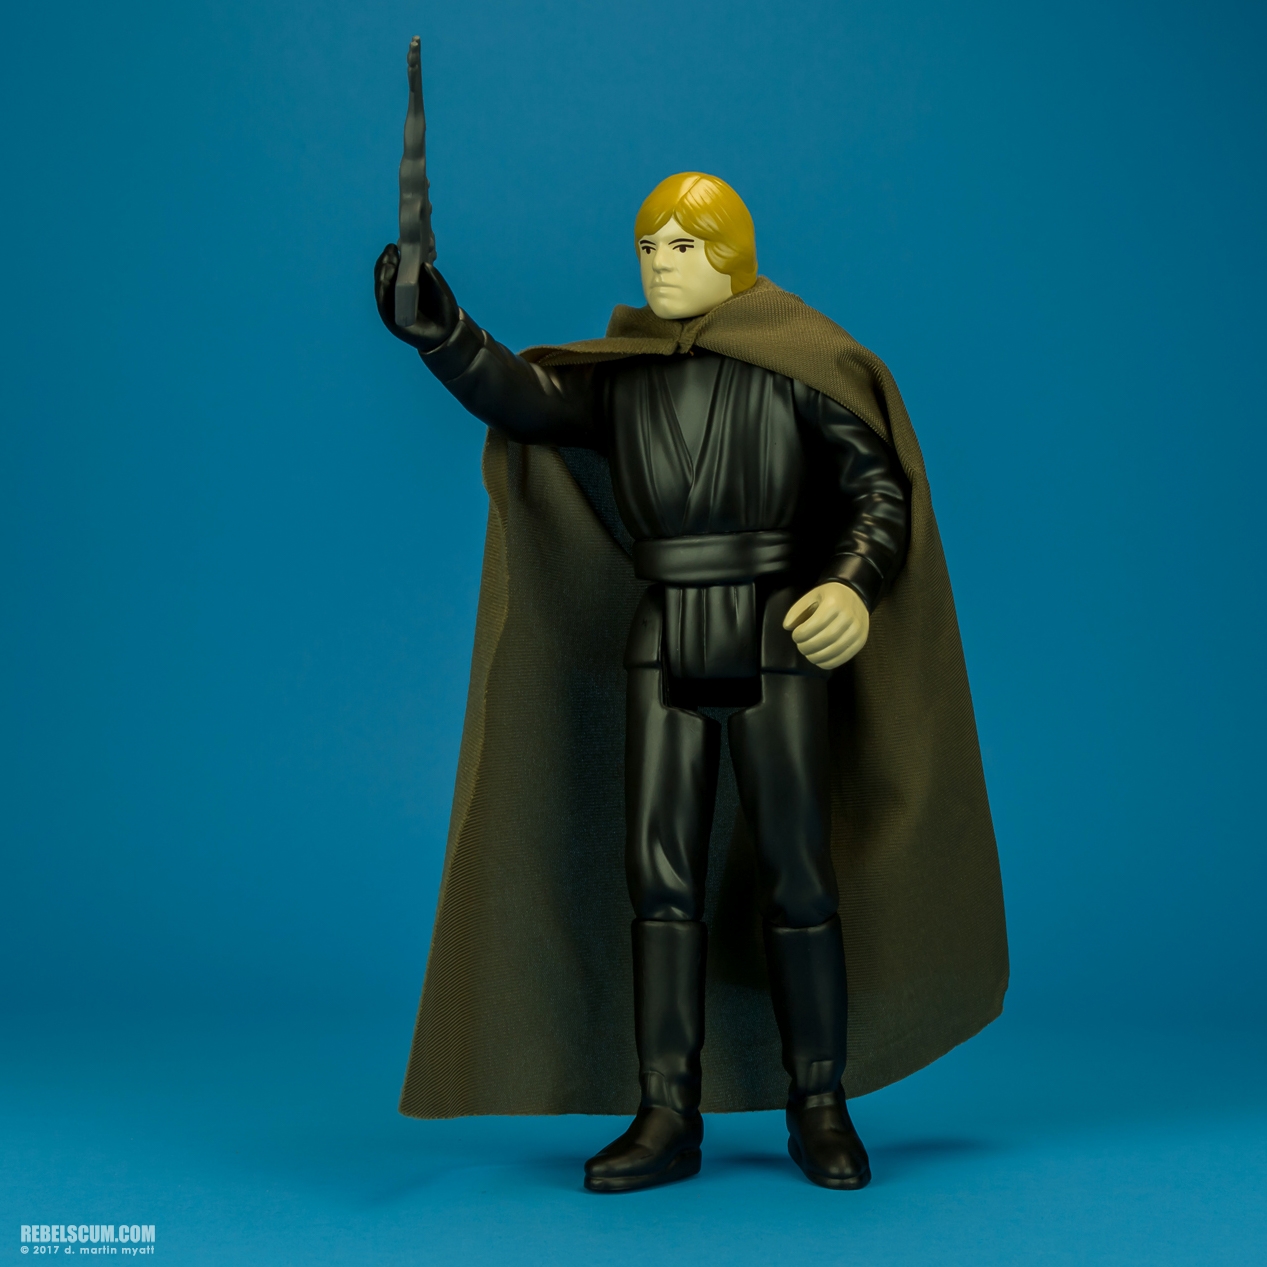 Luke-Skywalker-Jedi-Knight-Outfit-Jumbo-Kenner-011.jpg